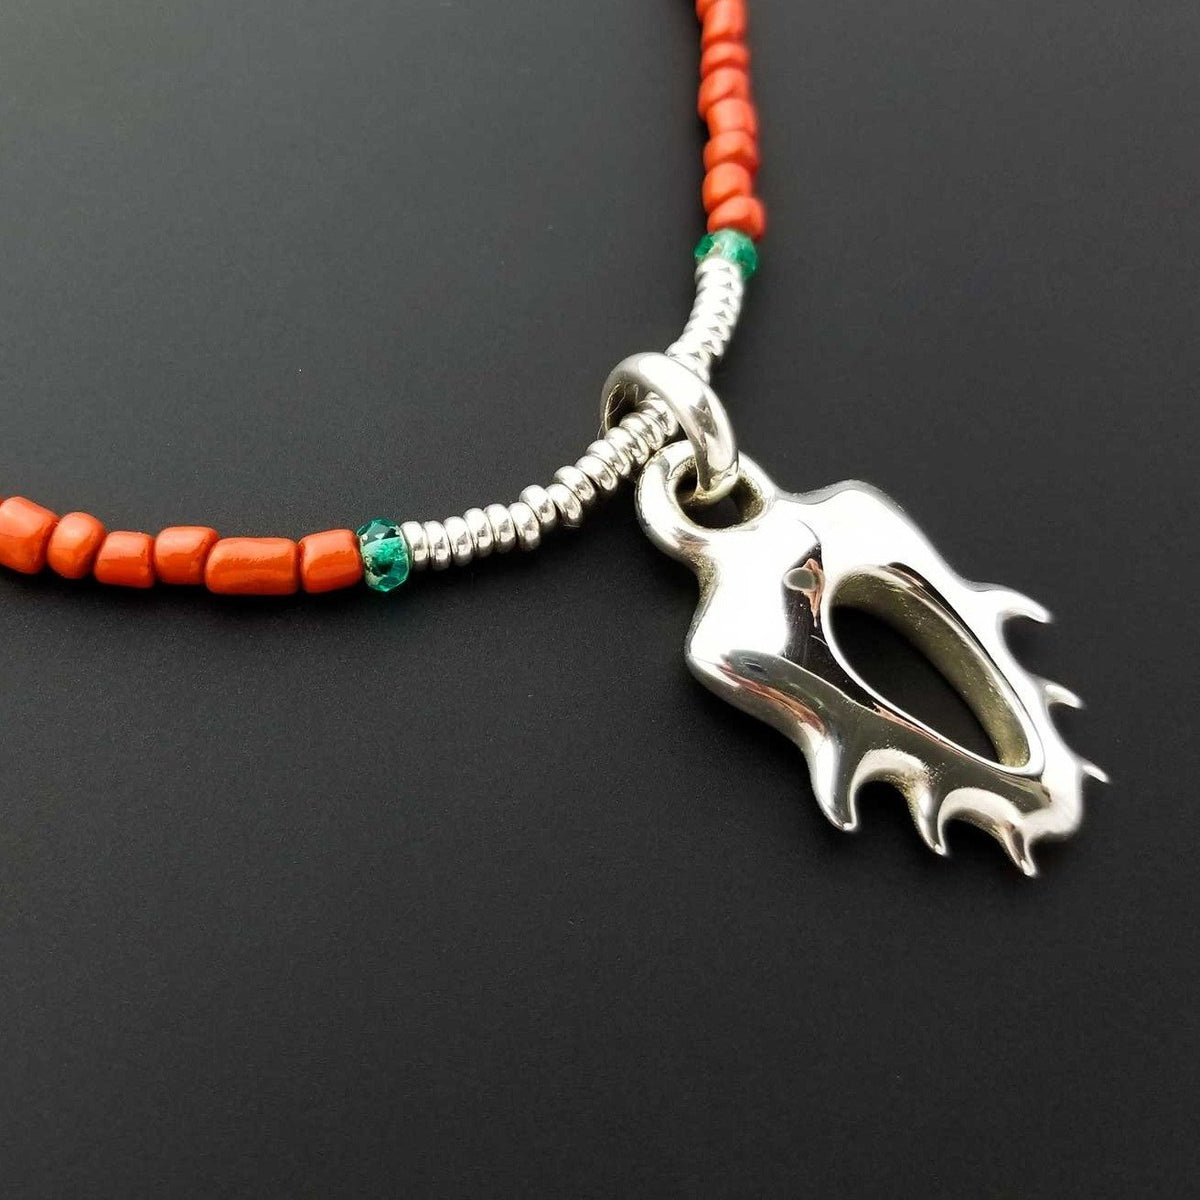 alien creature silver pendant